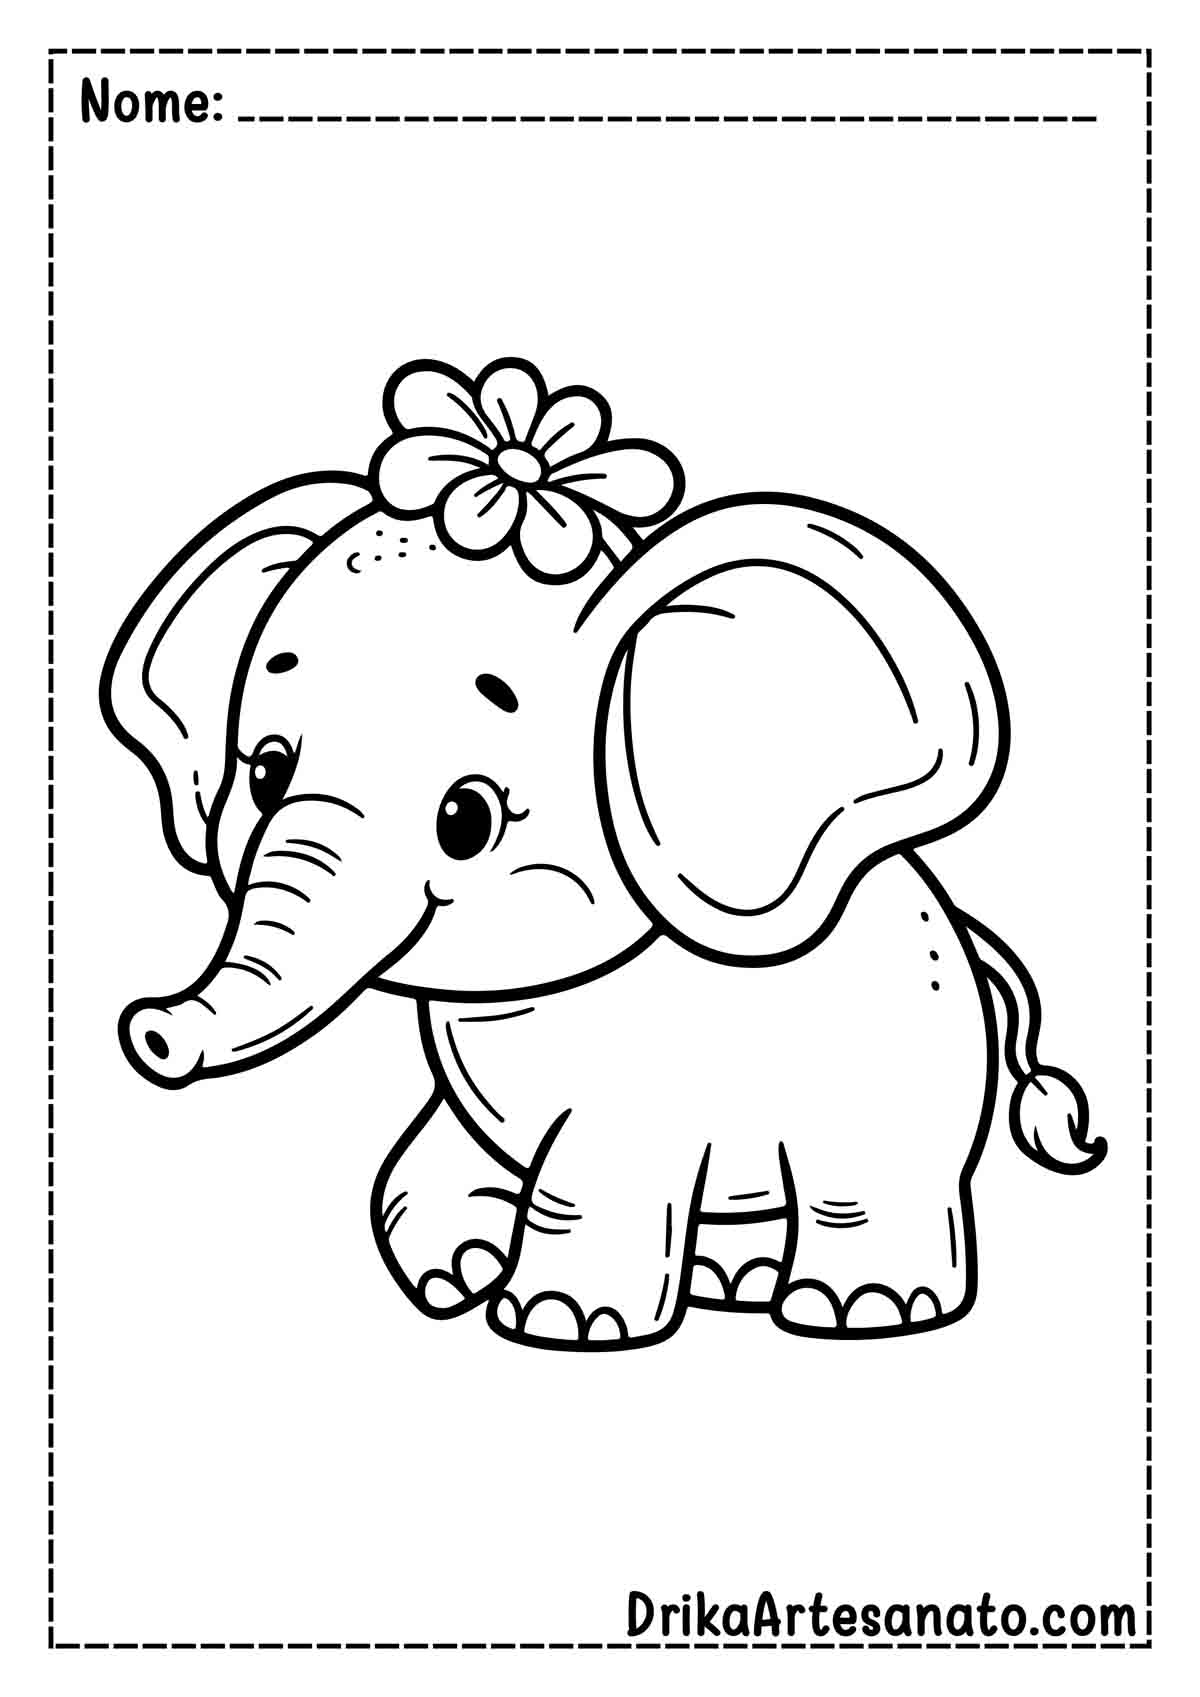 Desenho de Elefante Infantil para Colorir e Imprimir